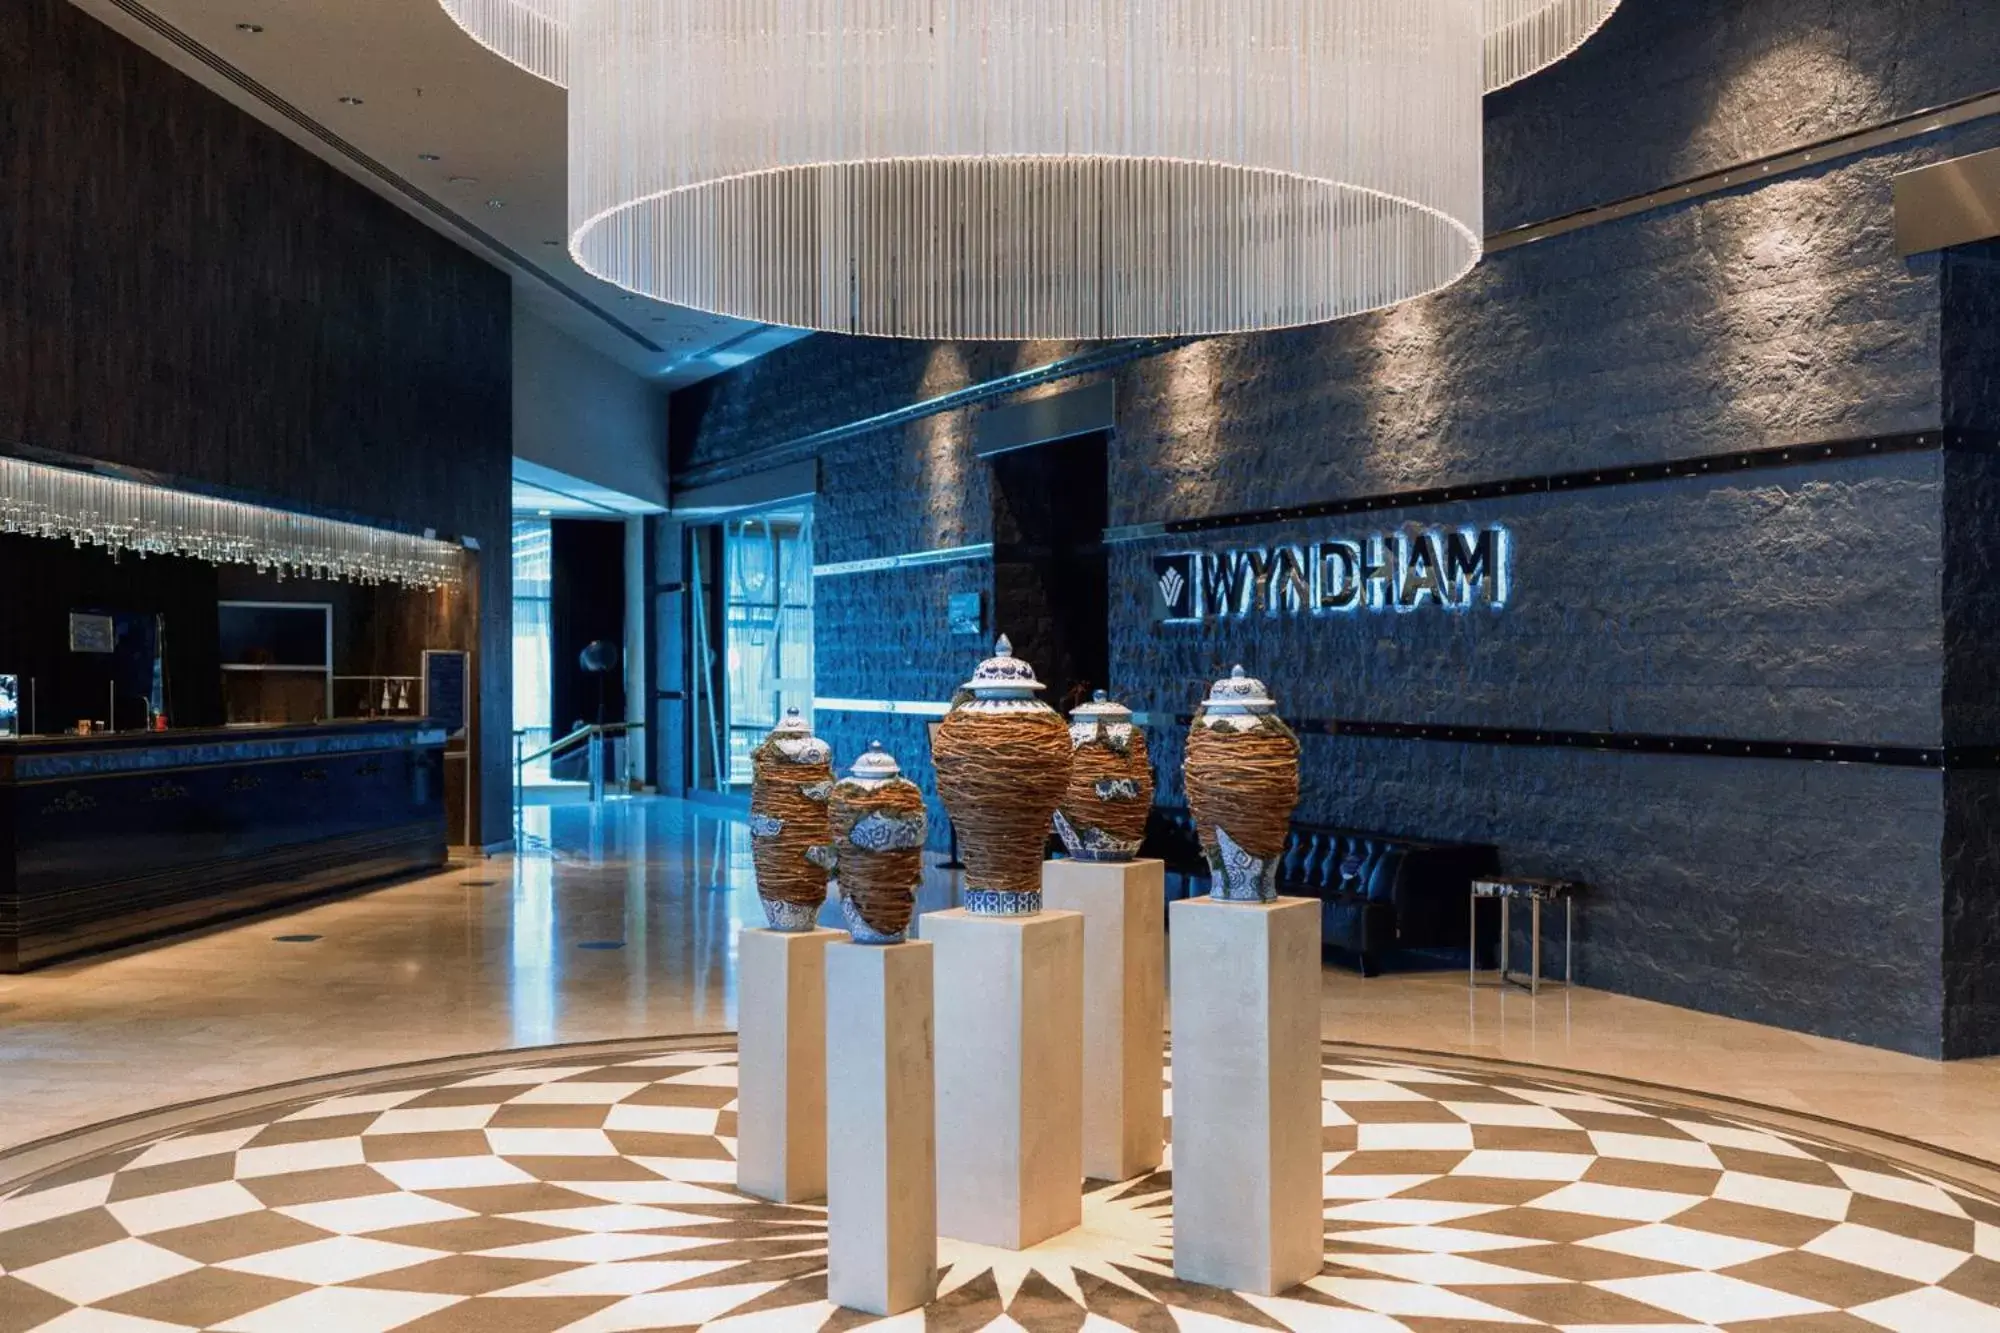 Lobby or reception in Wyndham Ankara